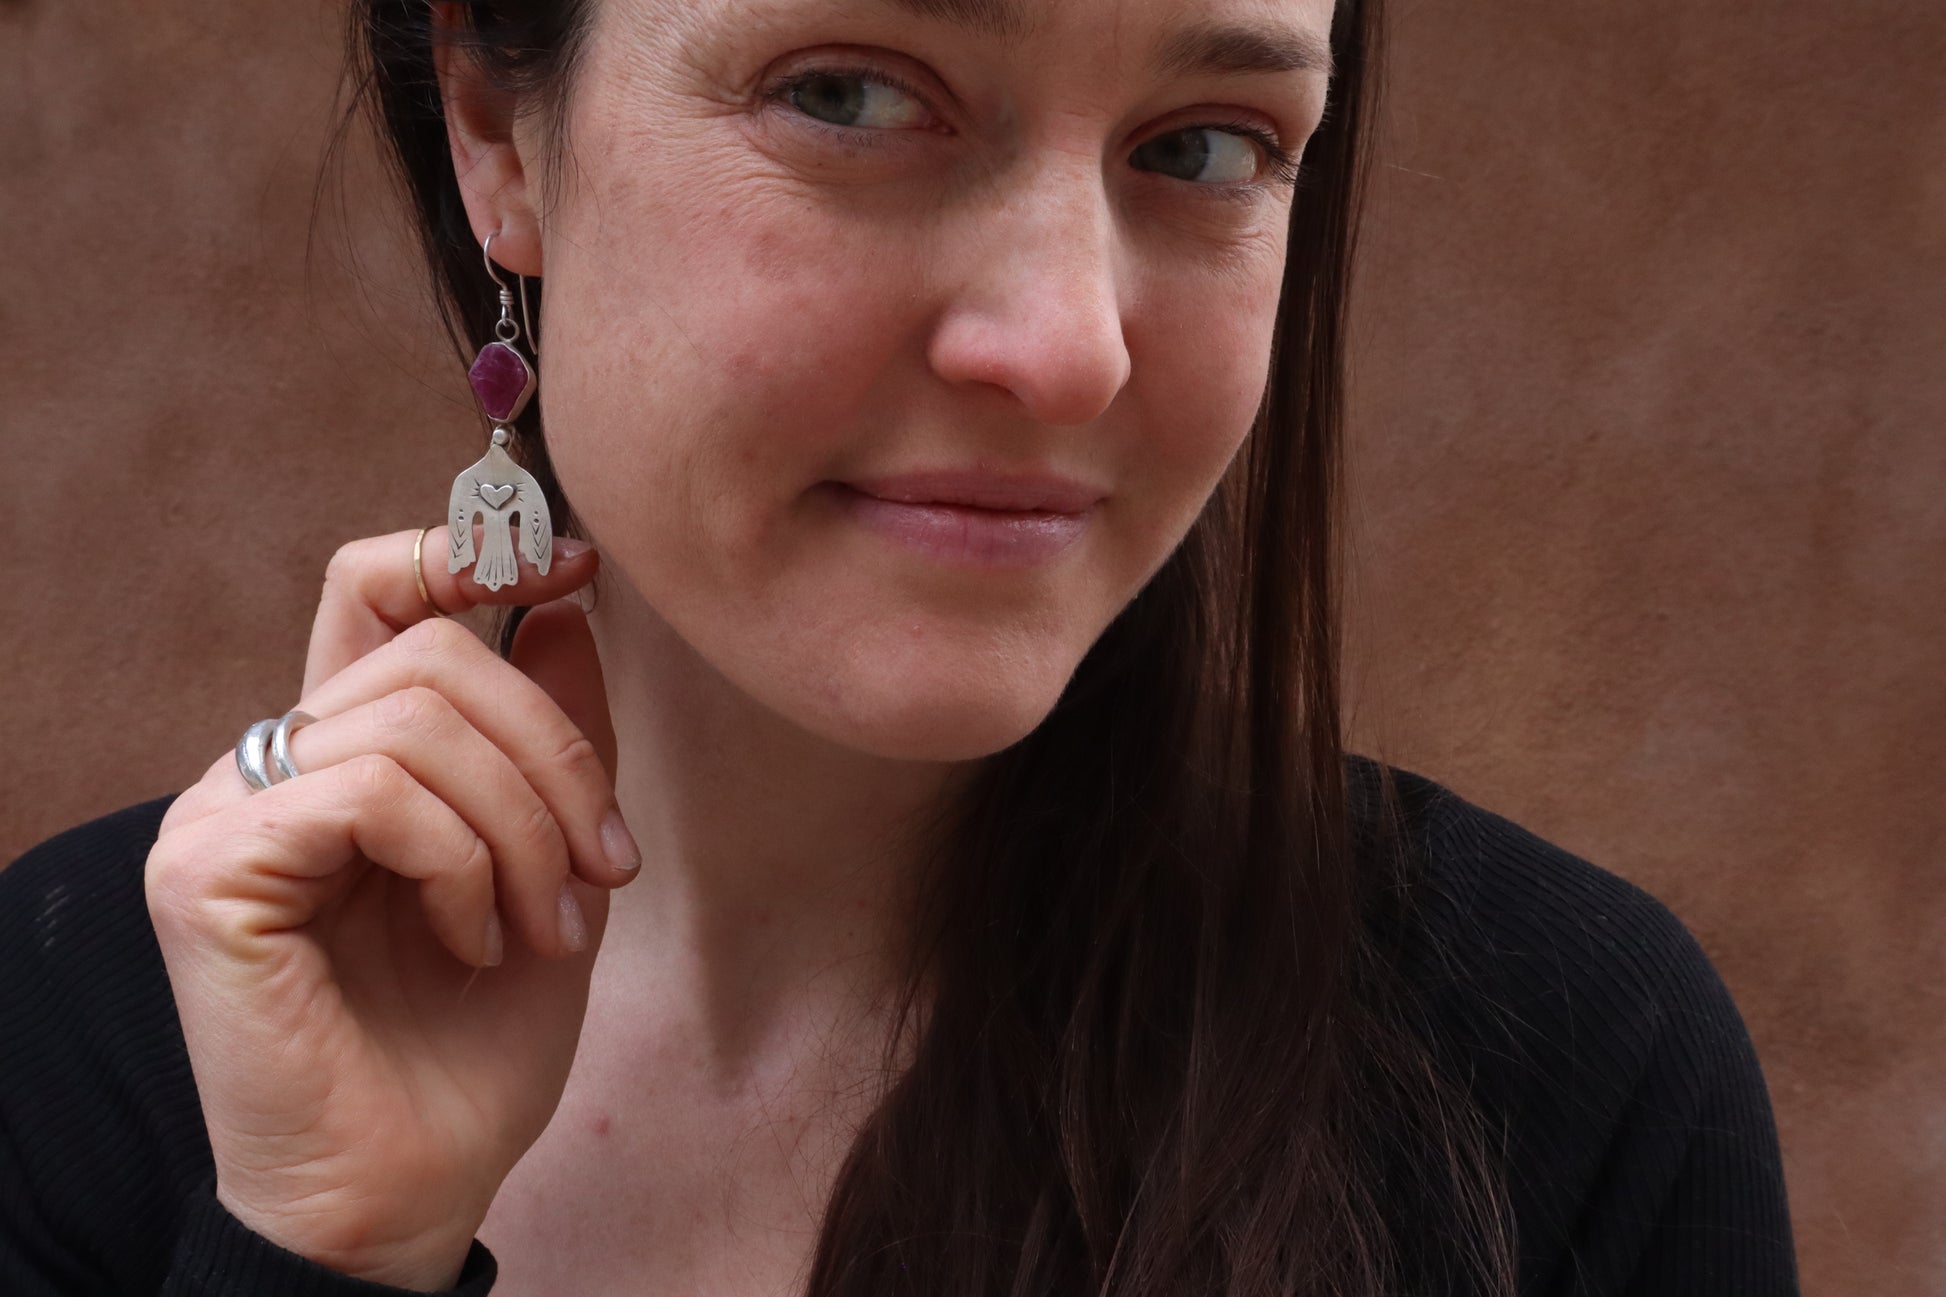 raw ruby earrings folk bird earrings handcrafted recycled silver earrings